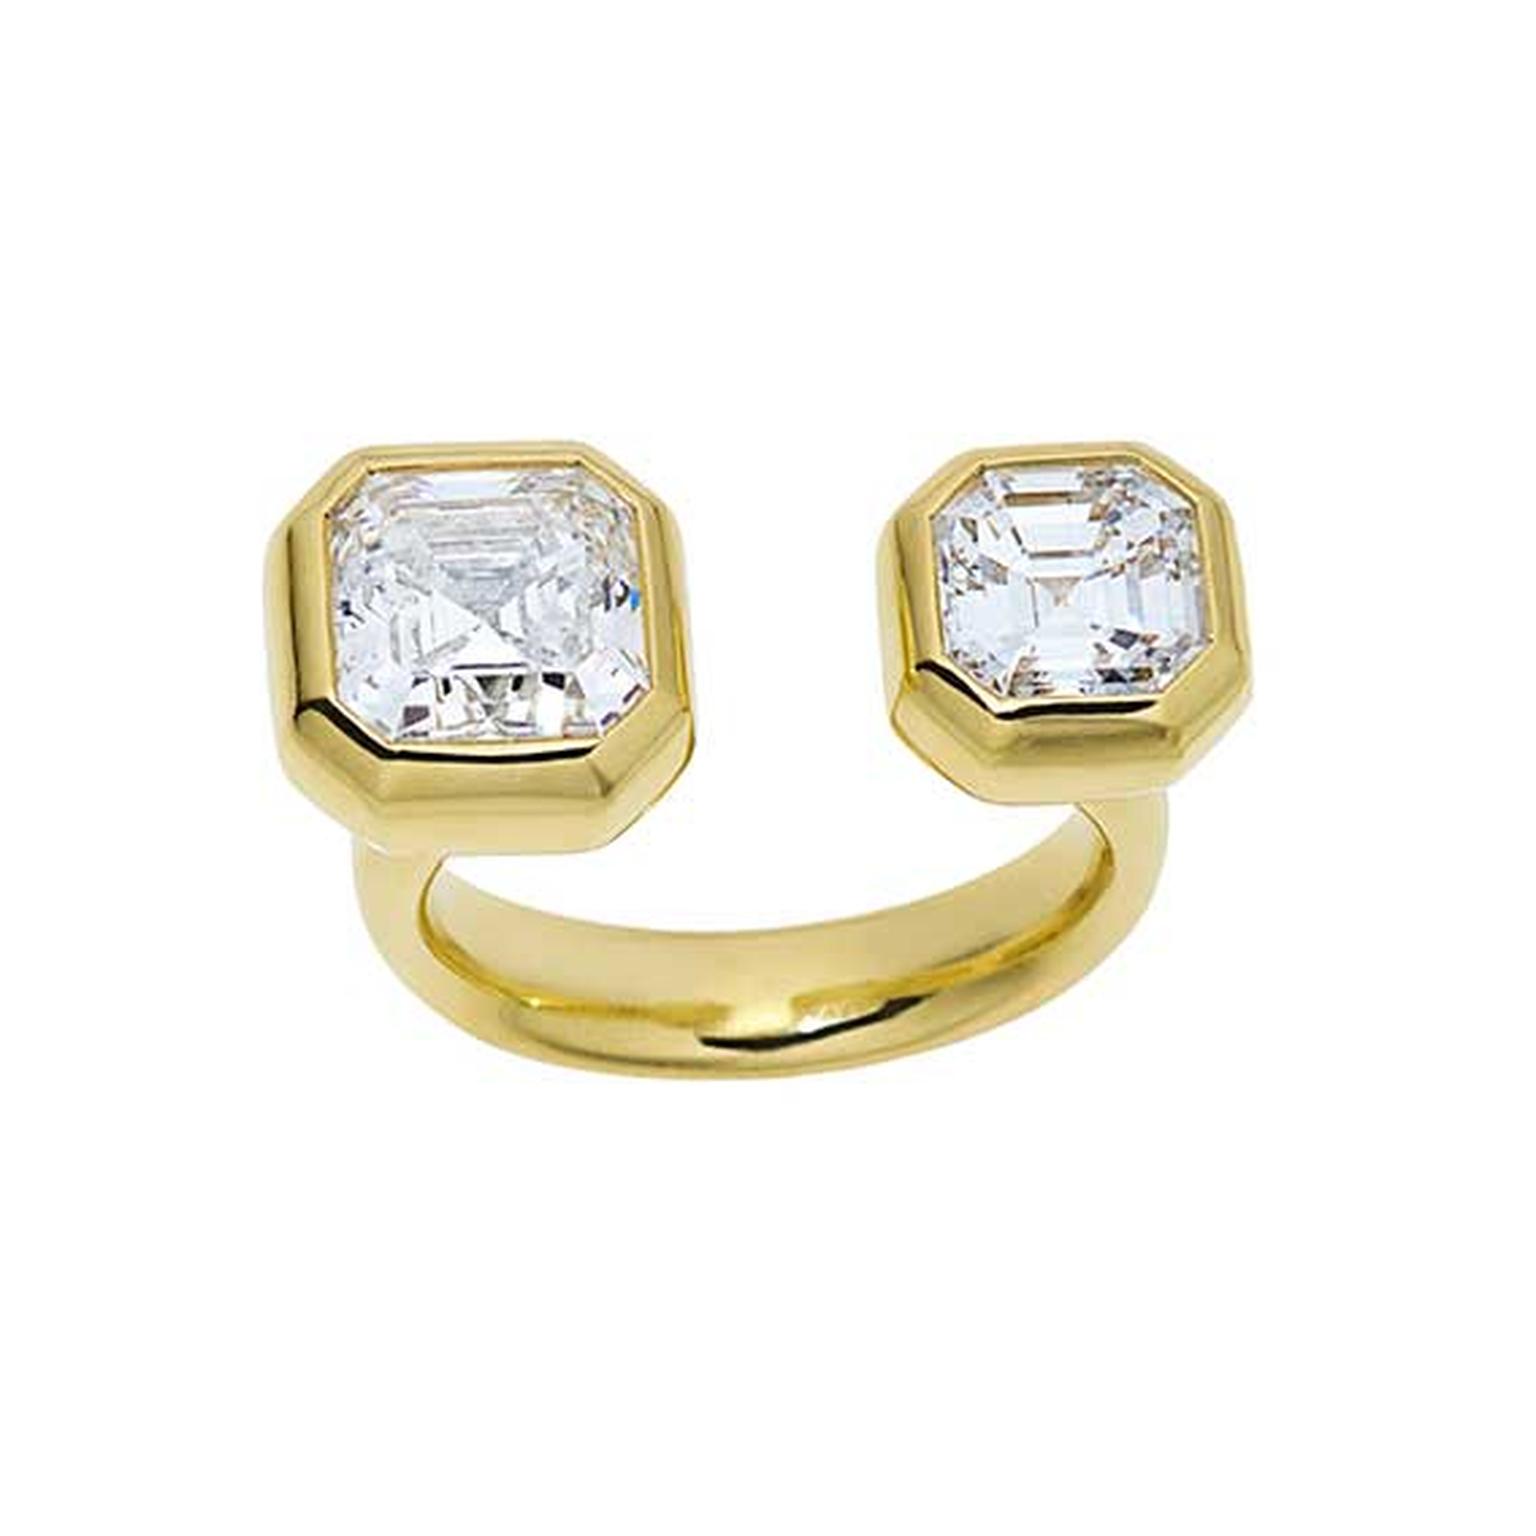 Jemma Wynne Asscher-cut diamond engagement ring